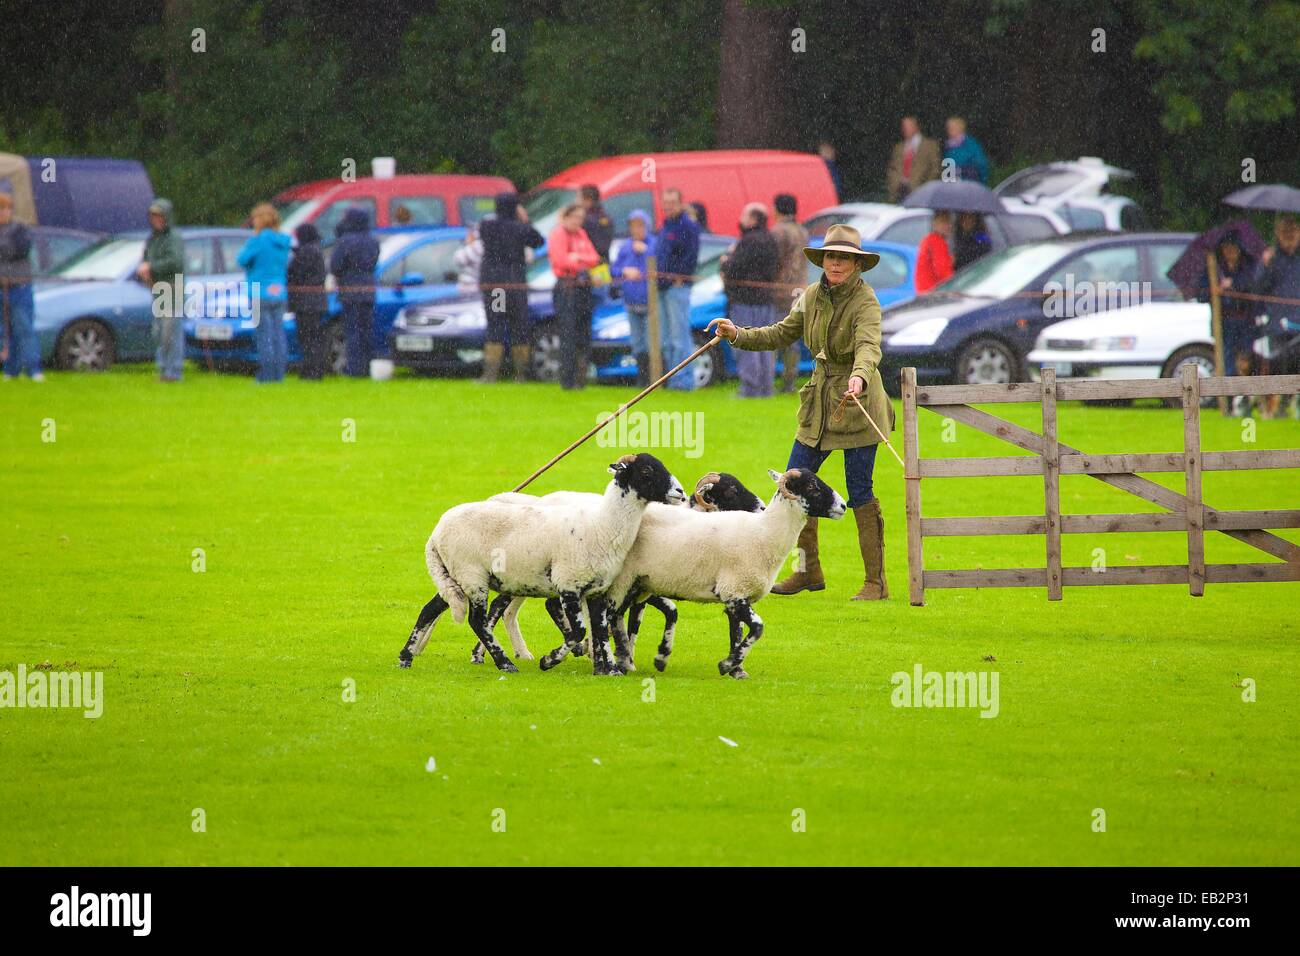 Katy Cropper im Regen im Wettbewerb Patterdale Tag des Hundes in der Nähe von Patterdale, The Lake District, Cumbria, England, UK. Stockfoto